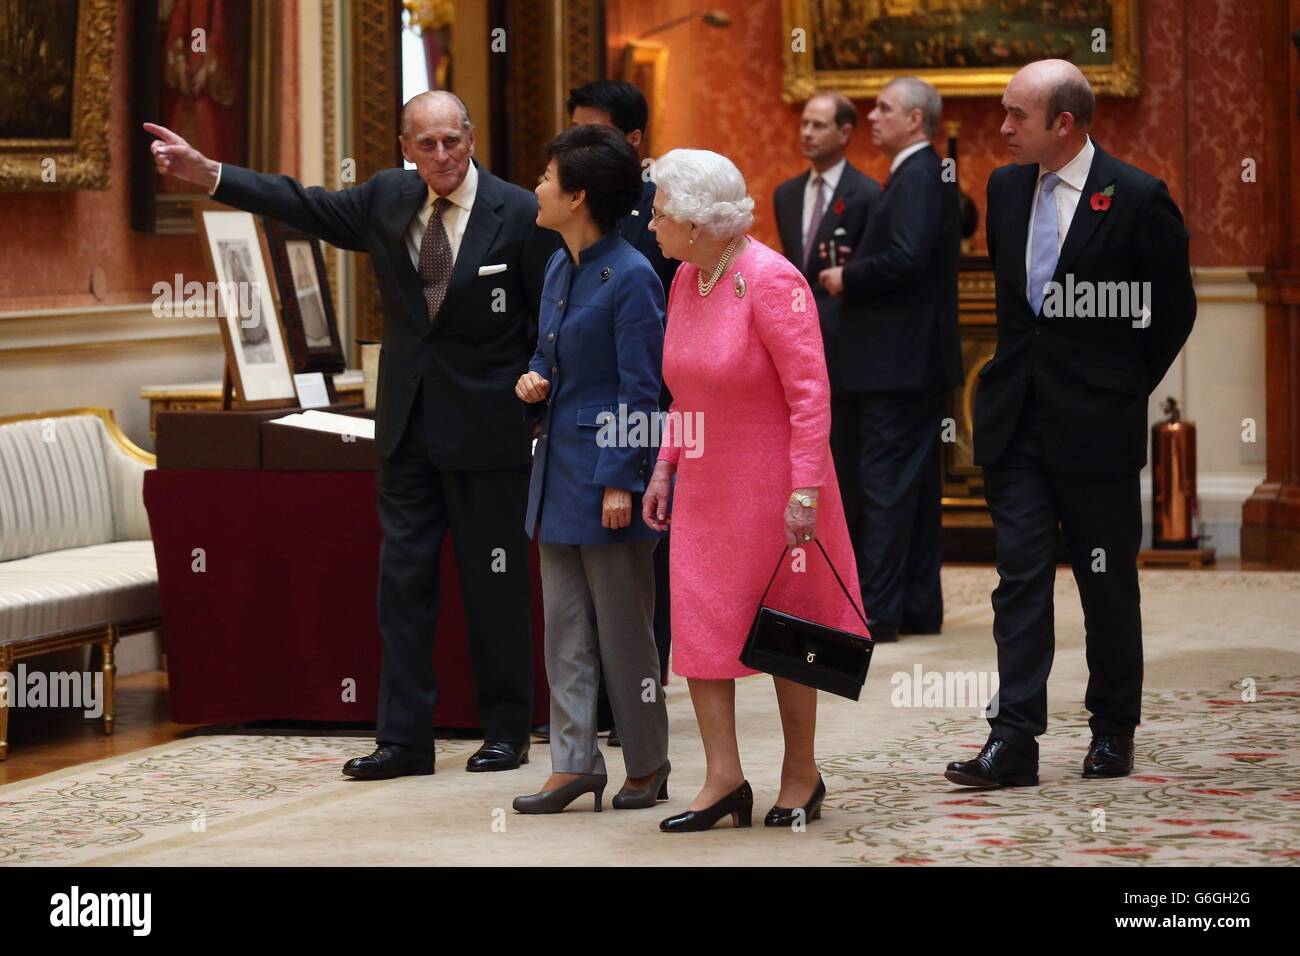 Der Präsident der Republik Korea Park Geun-Hye (zweite links), der Herzog von Edinburgh (links) und Königin Elizabeth II. Kommen, um sich eine Ausstellung mit koreanischen Gegenständen aus der Royal Collection und dem Royal Archives in der Bildergalerie des Buckingham Palace in London anzusehen. Die Präsidentin ist auf einem Staatsbesuch im Vereinigten Königreich und während der Reise wird sie an einem Staatsbankett teilnehmen und Downing Street besuchen. Stockfoto